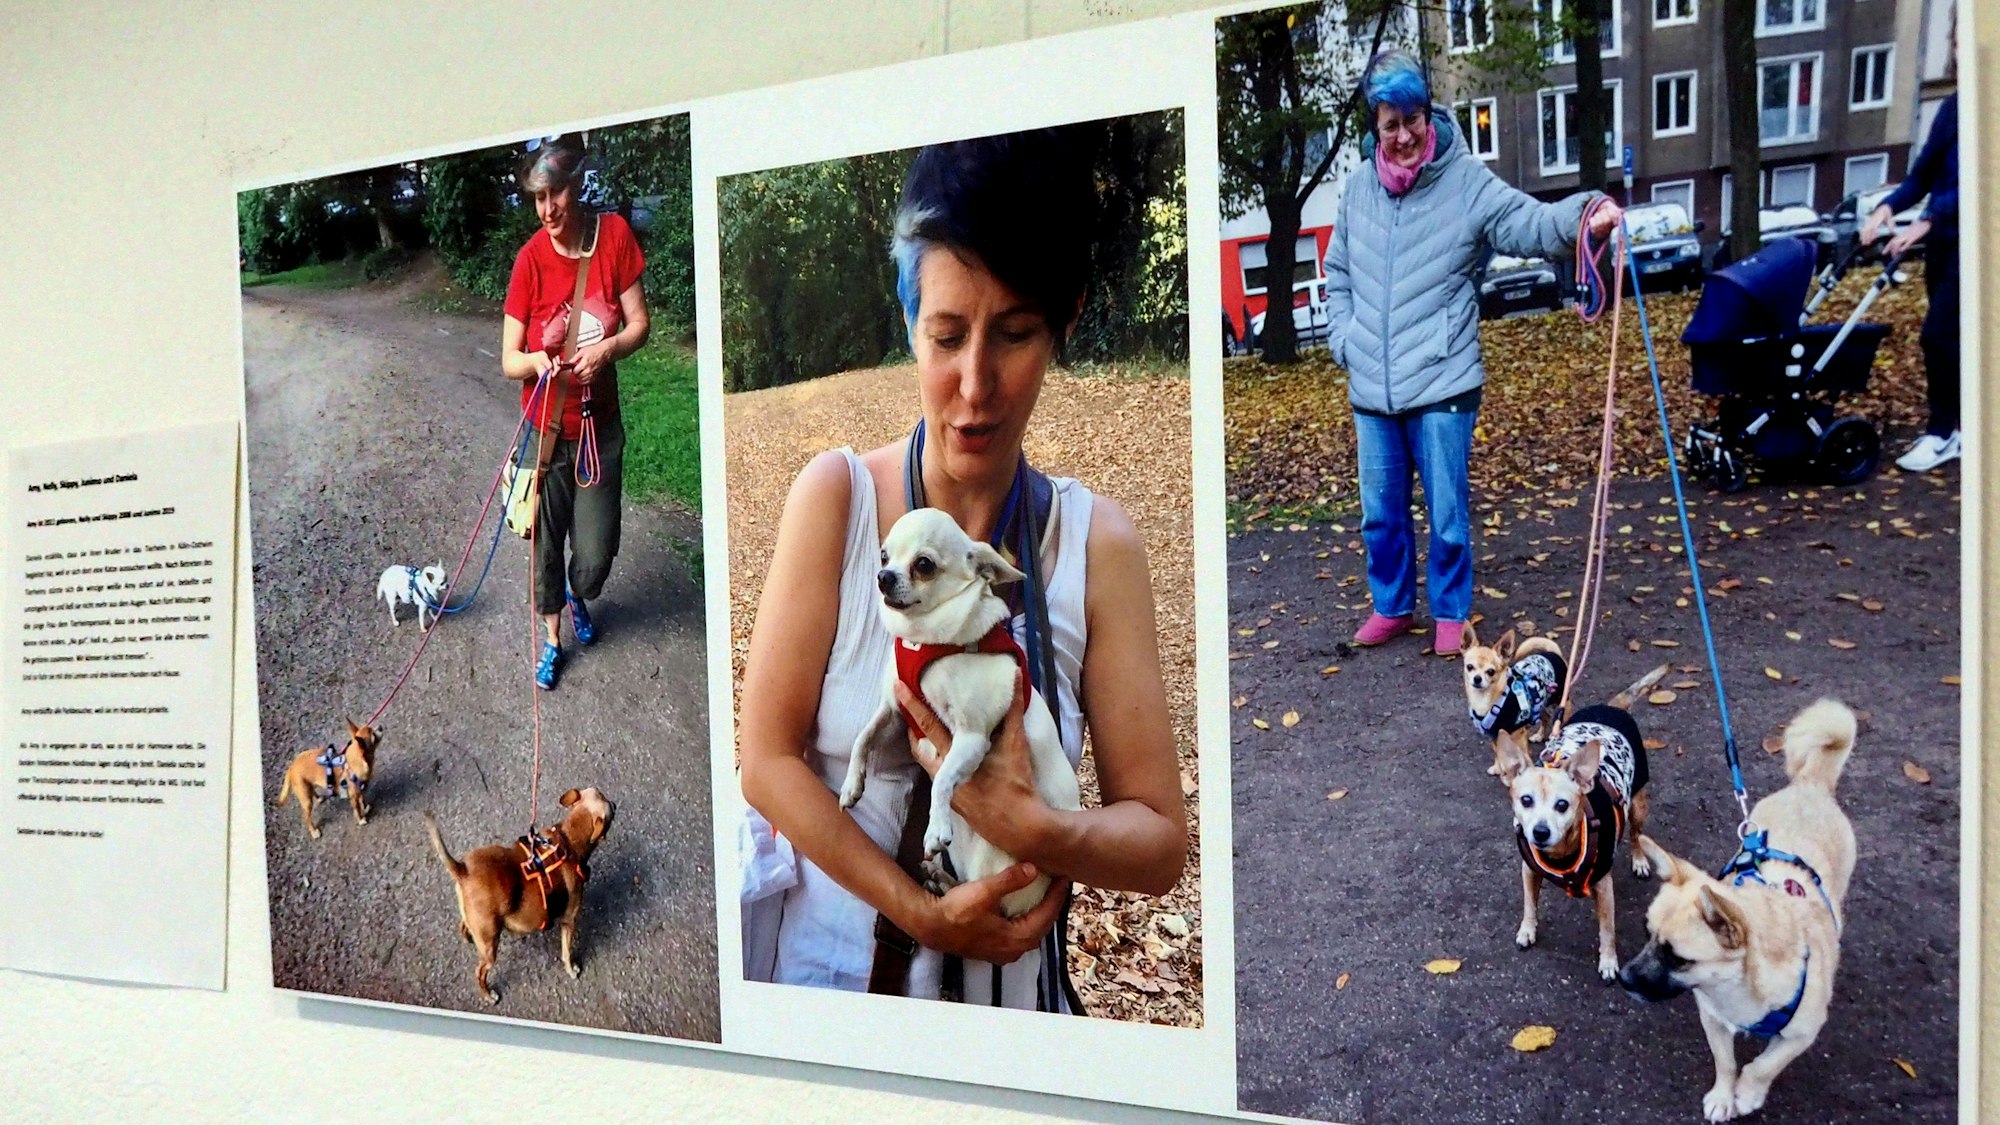 Auf drei Fotos sind Frauen mit ihren Hunden zu sehen, zwei von ihnen führen gleich drei Hunde an der Leine.